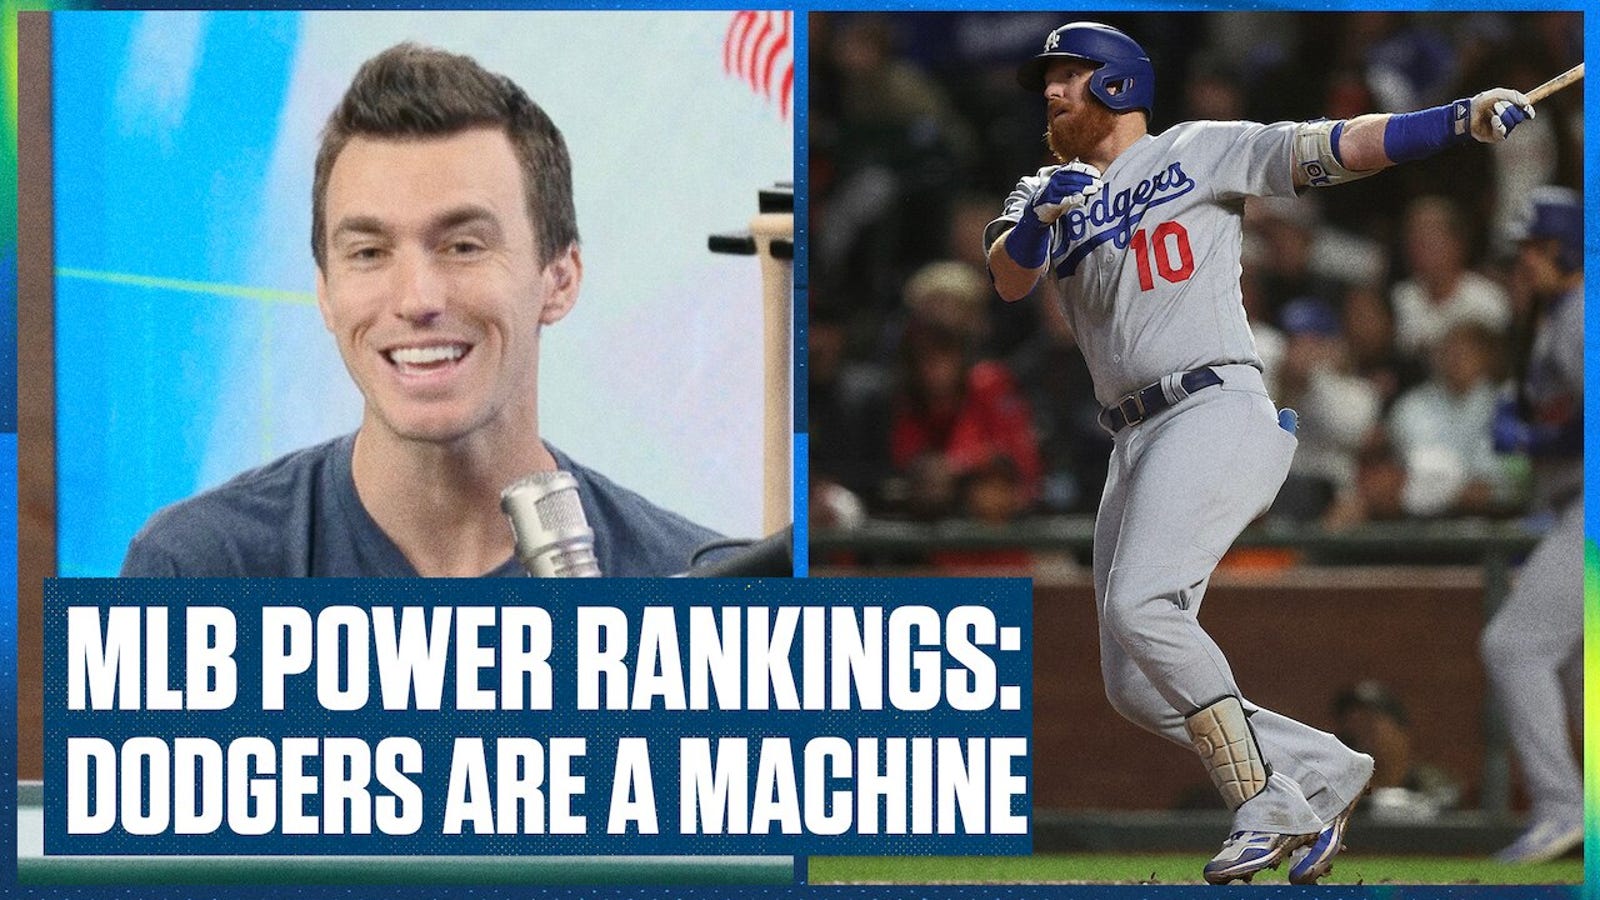 MLB Power Rankings: Astros, Dodgers STILL top teams in baseball